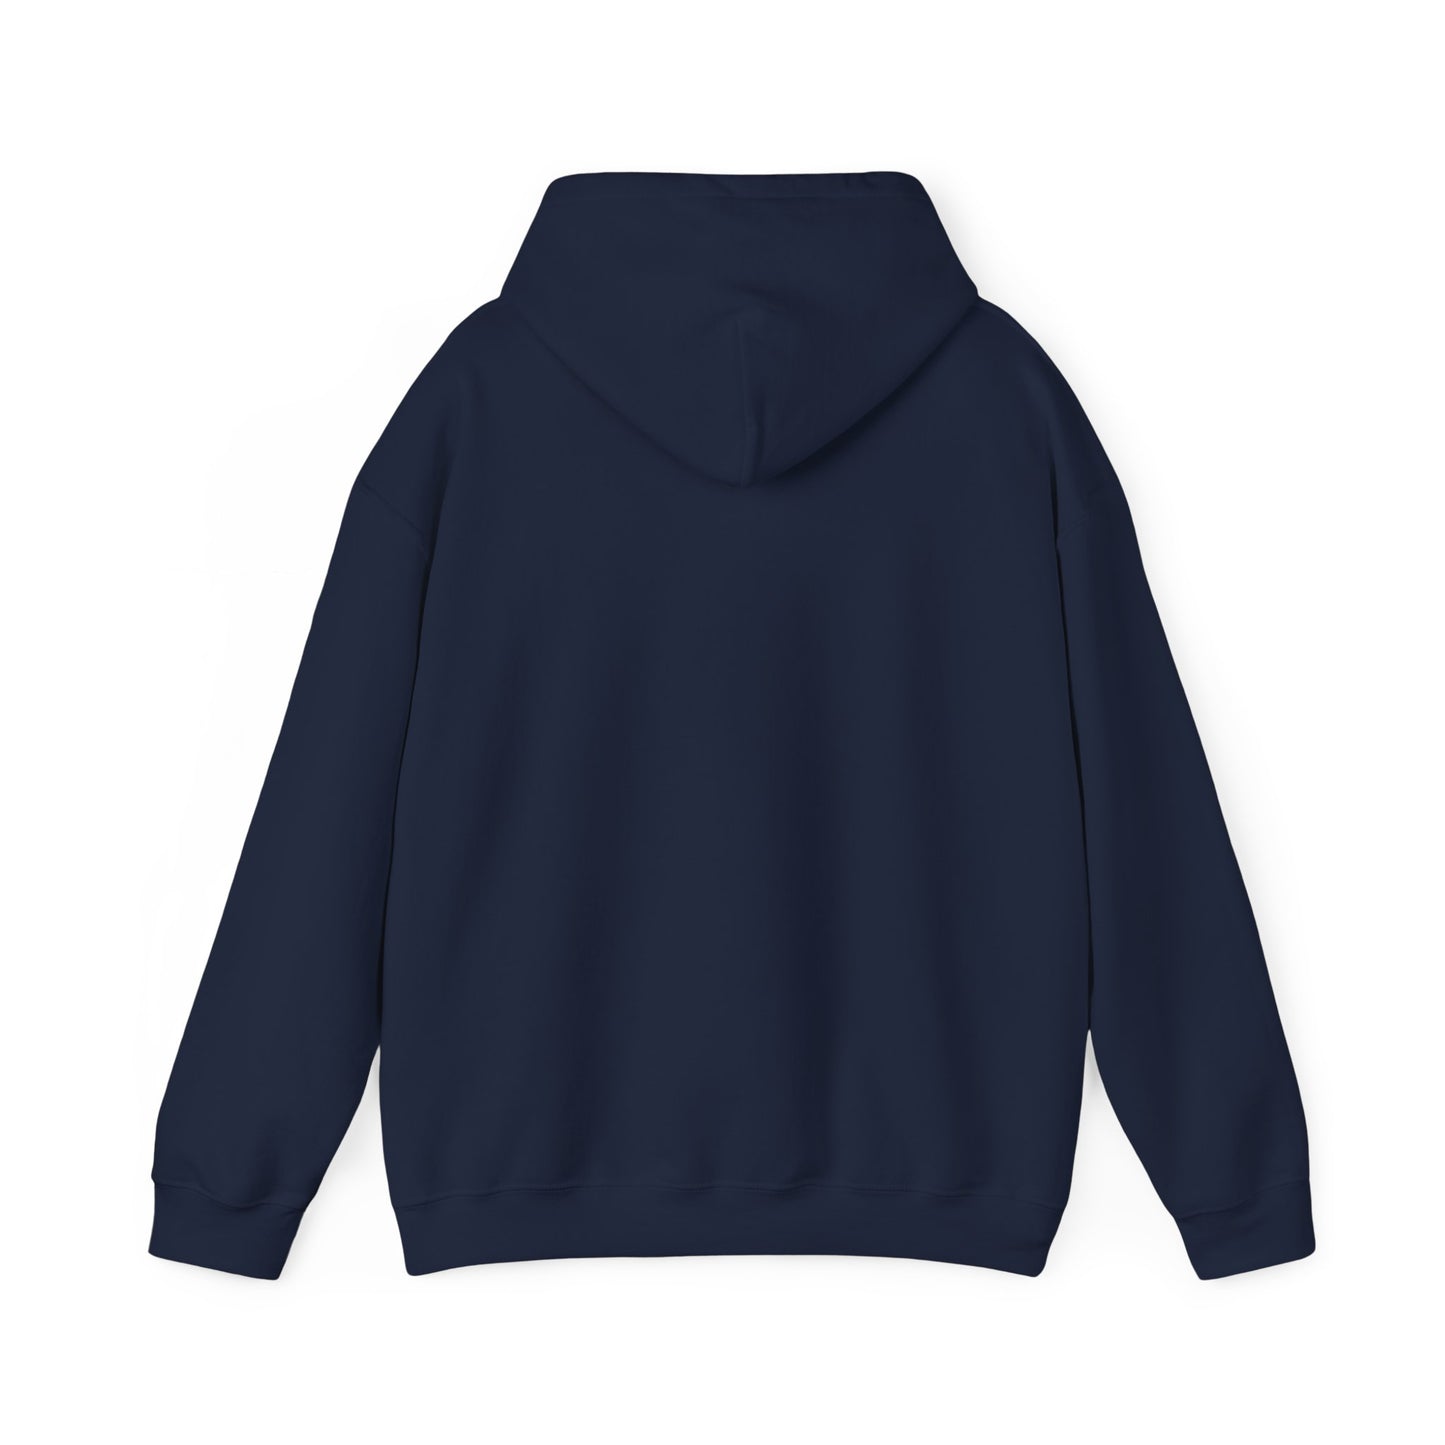 "MOTI" Motivated Hoodie! - Unisex Heavy Blend™ Hooded Sweatshirt